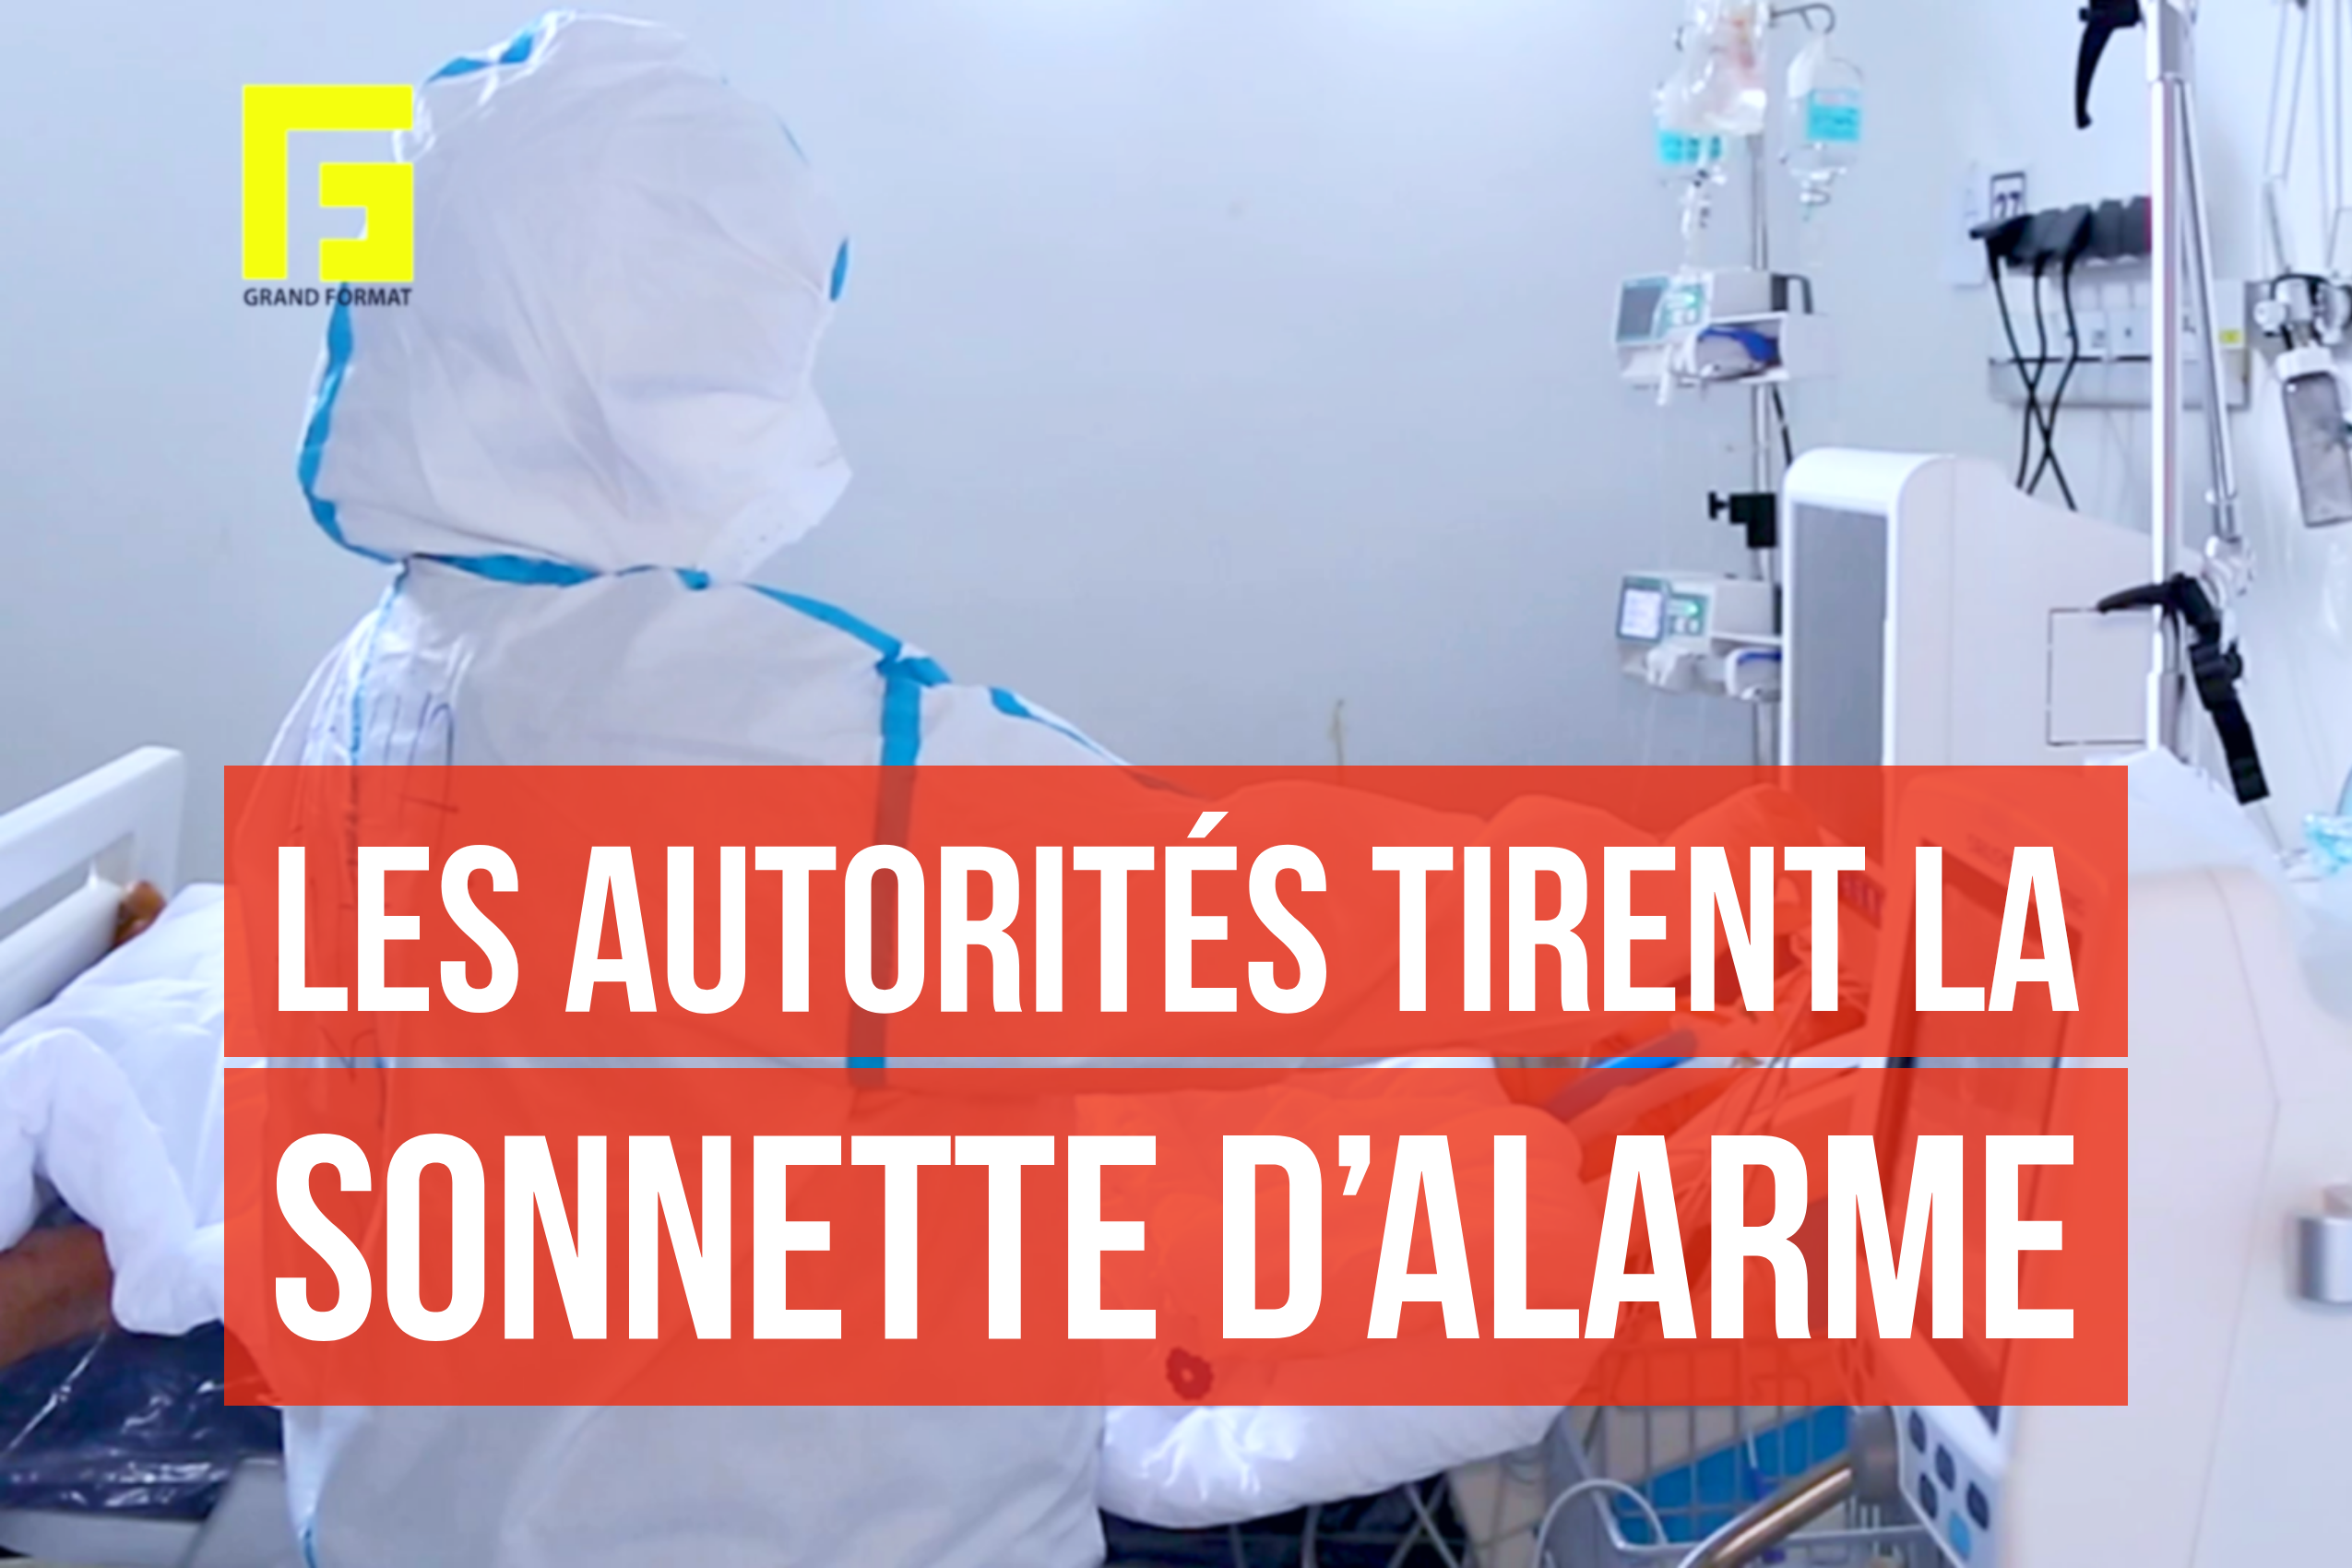 VIDEO. Situation épidémiologique préoccupante au Maroc : Les autorités tirent la sonnette d’alarme